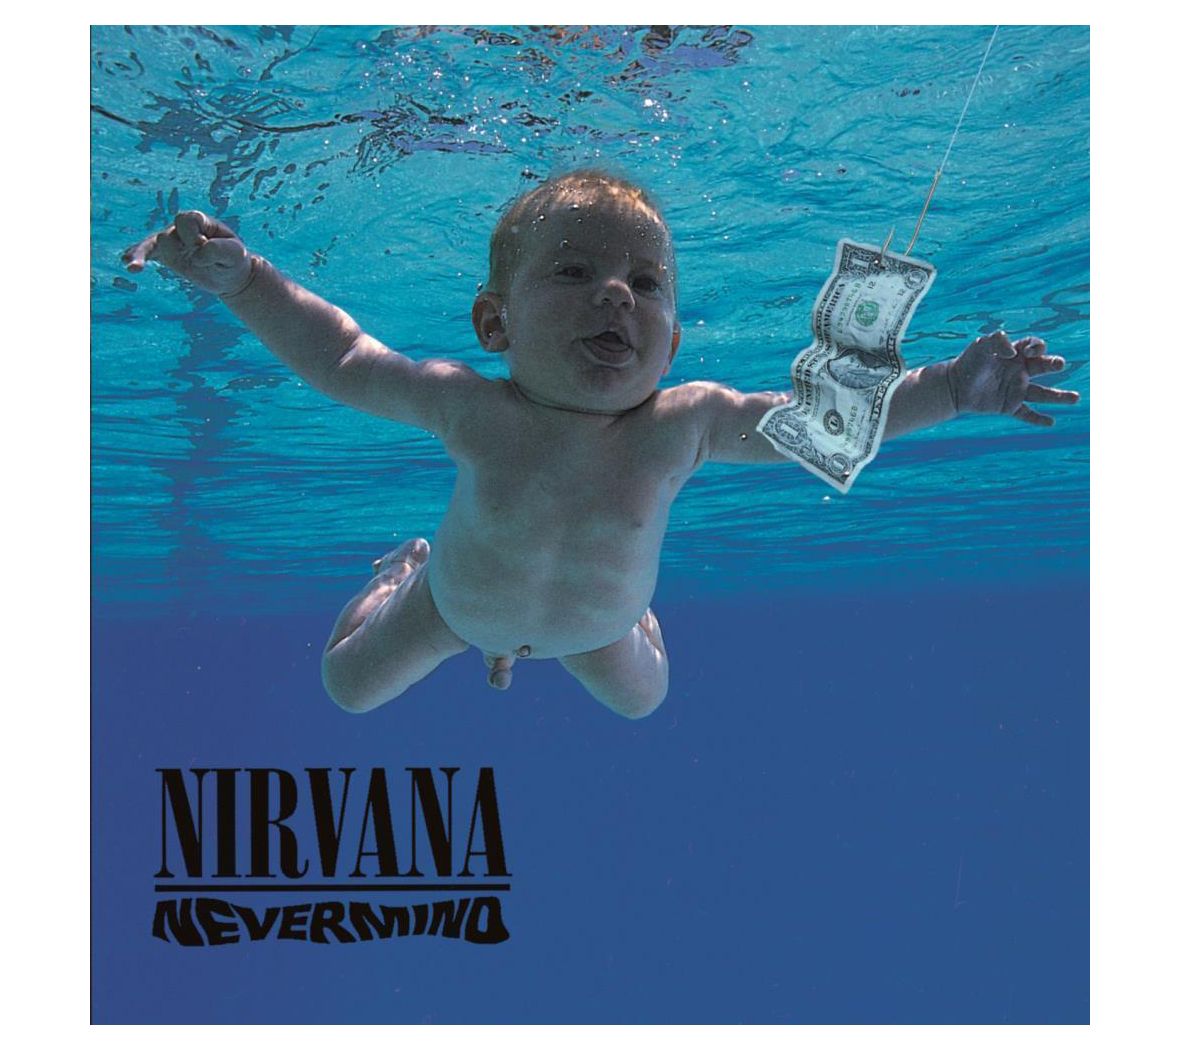 Nirvana Vinyl Record Art